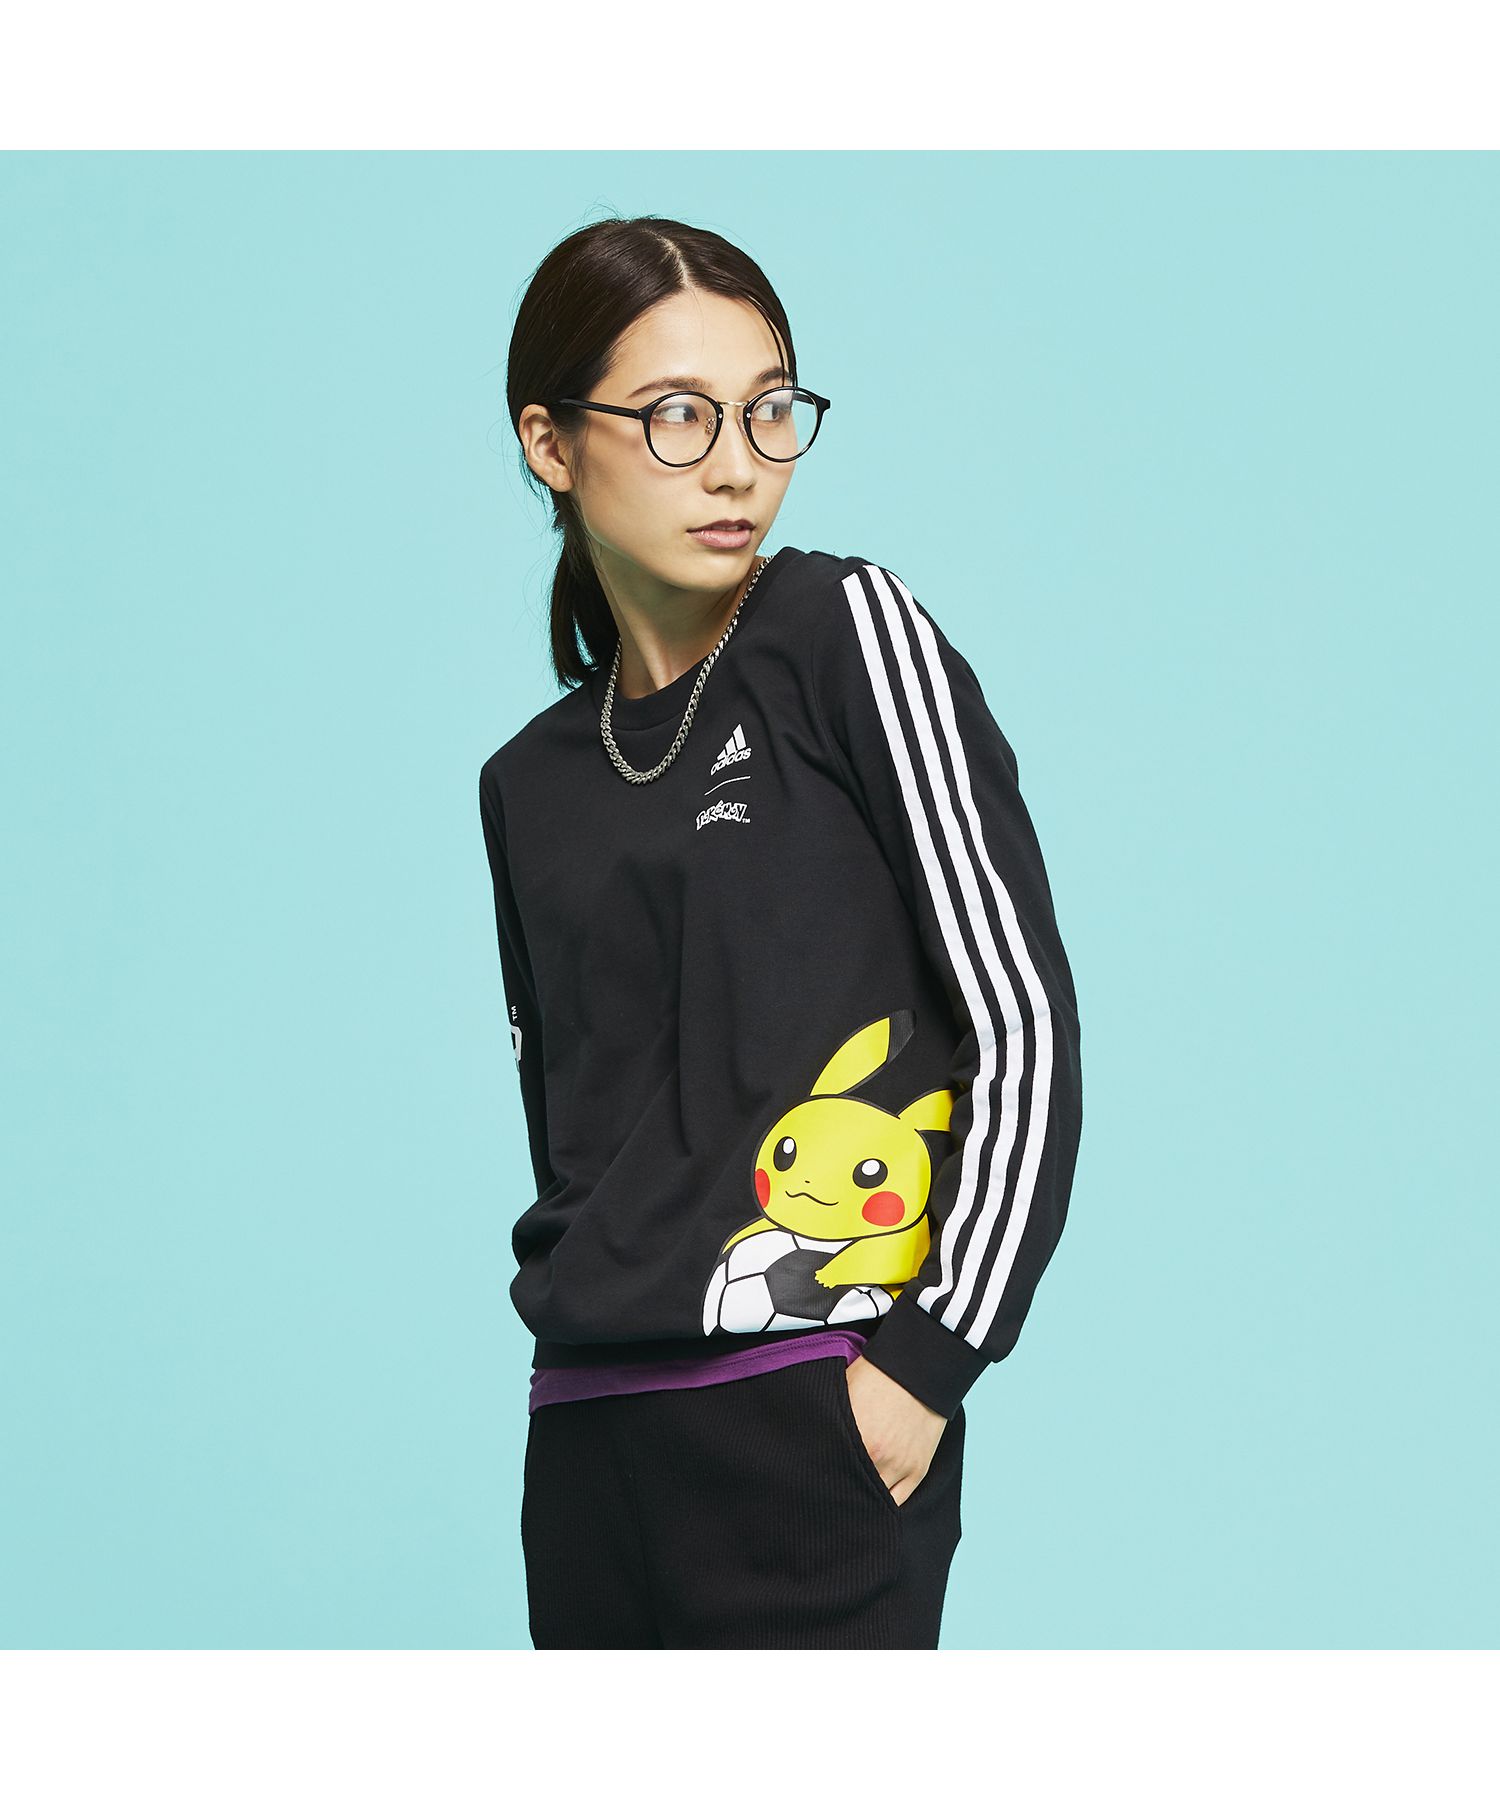 ポケモン ピカチュウ スウェットシャツ / Pokemon Pikachu Sweatshirt